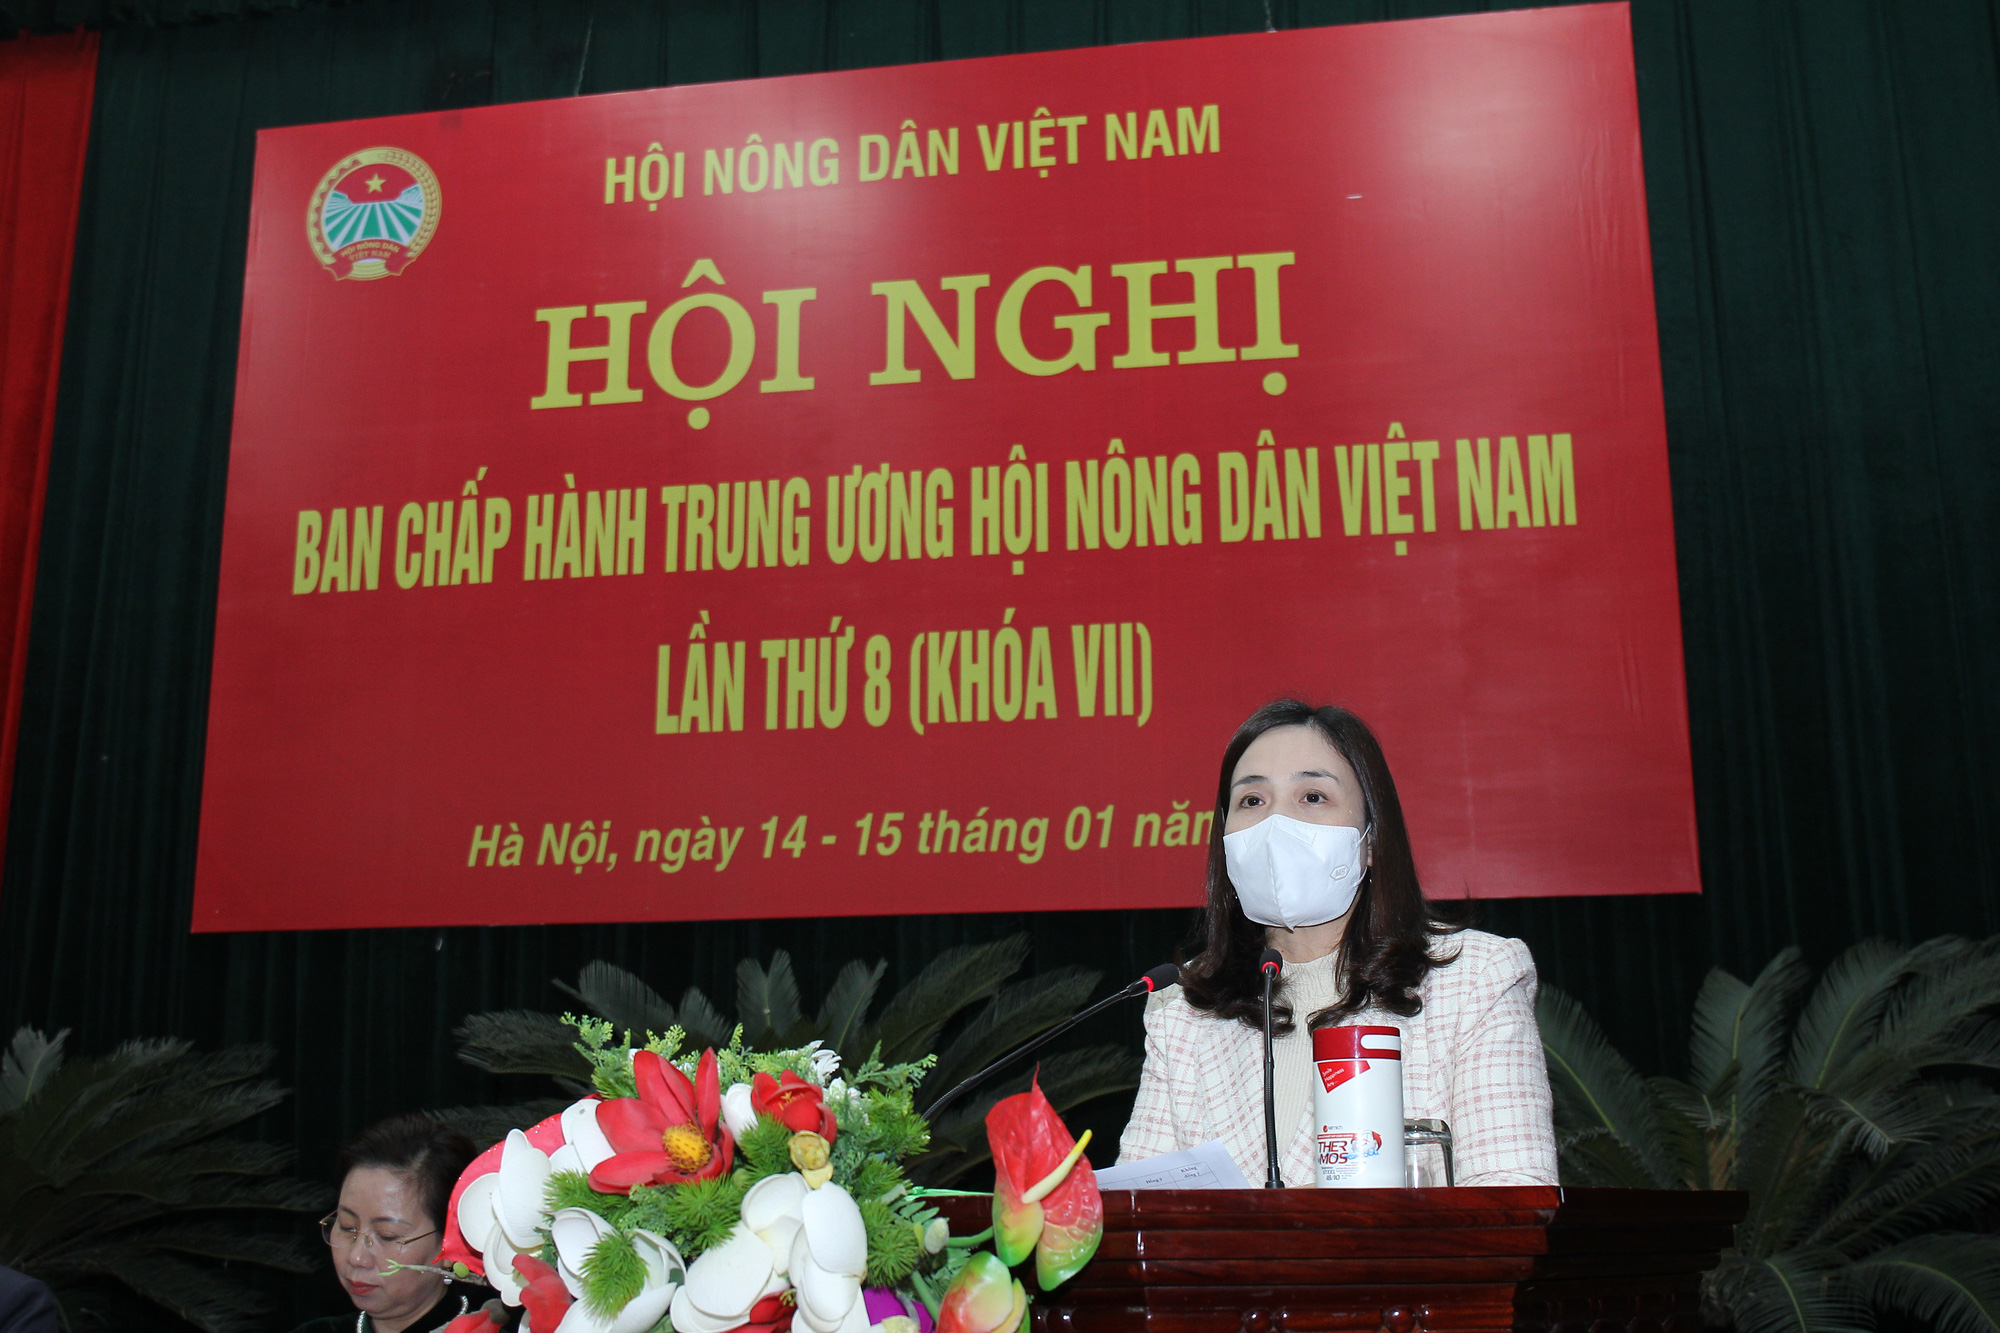 Chủ tịch Hội Nông dân Việt Nam Lương Quốc Đoàn được bỏ phiếu tín nhiệm cao 98,8%- Ảnh 2.